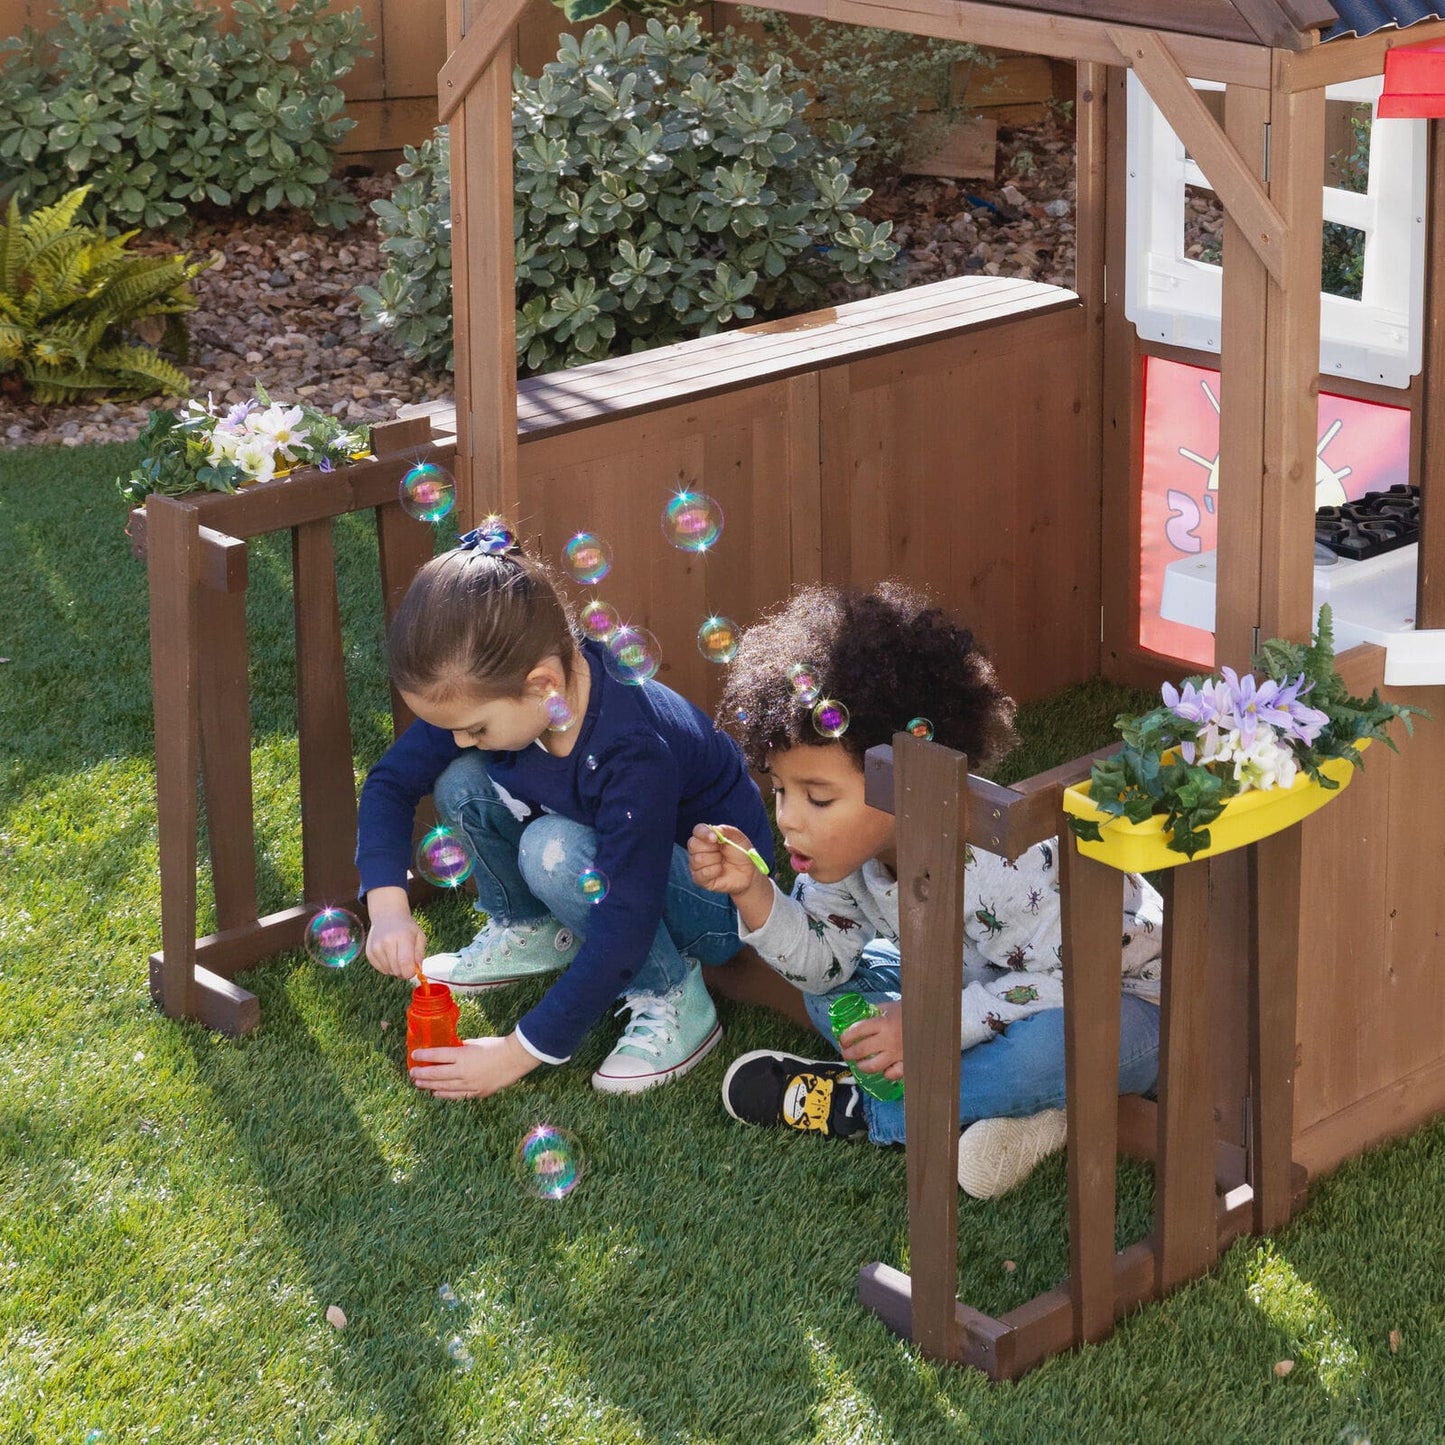 Kids Outdoor Playhouse - Children's Wooden Playhouse - Outdoor Playhouse for Kids - Clubhouse, Toddlers, Children